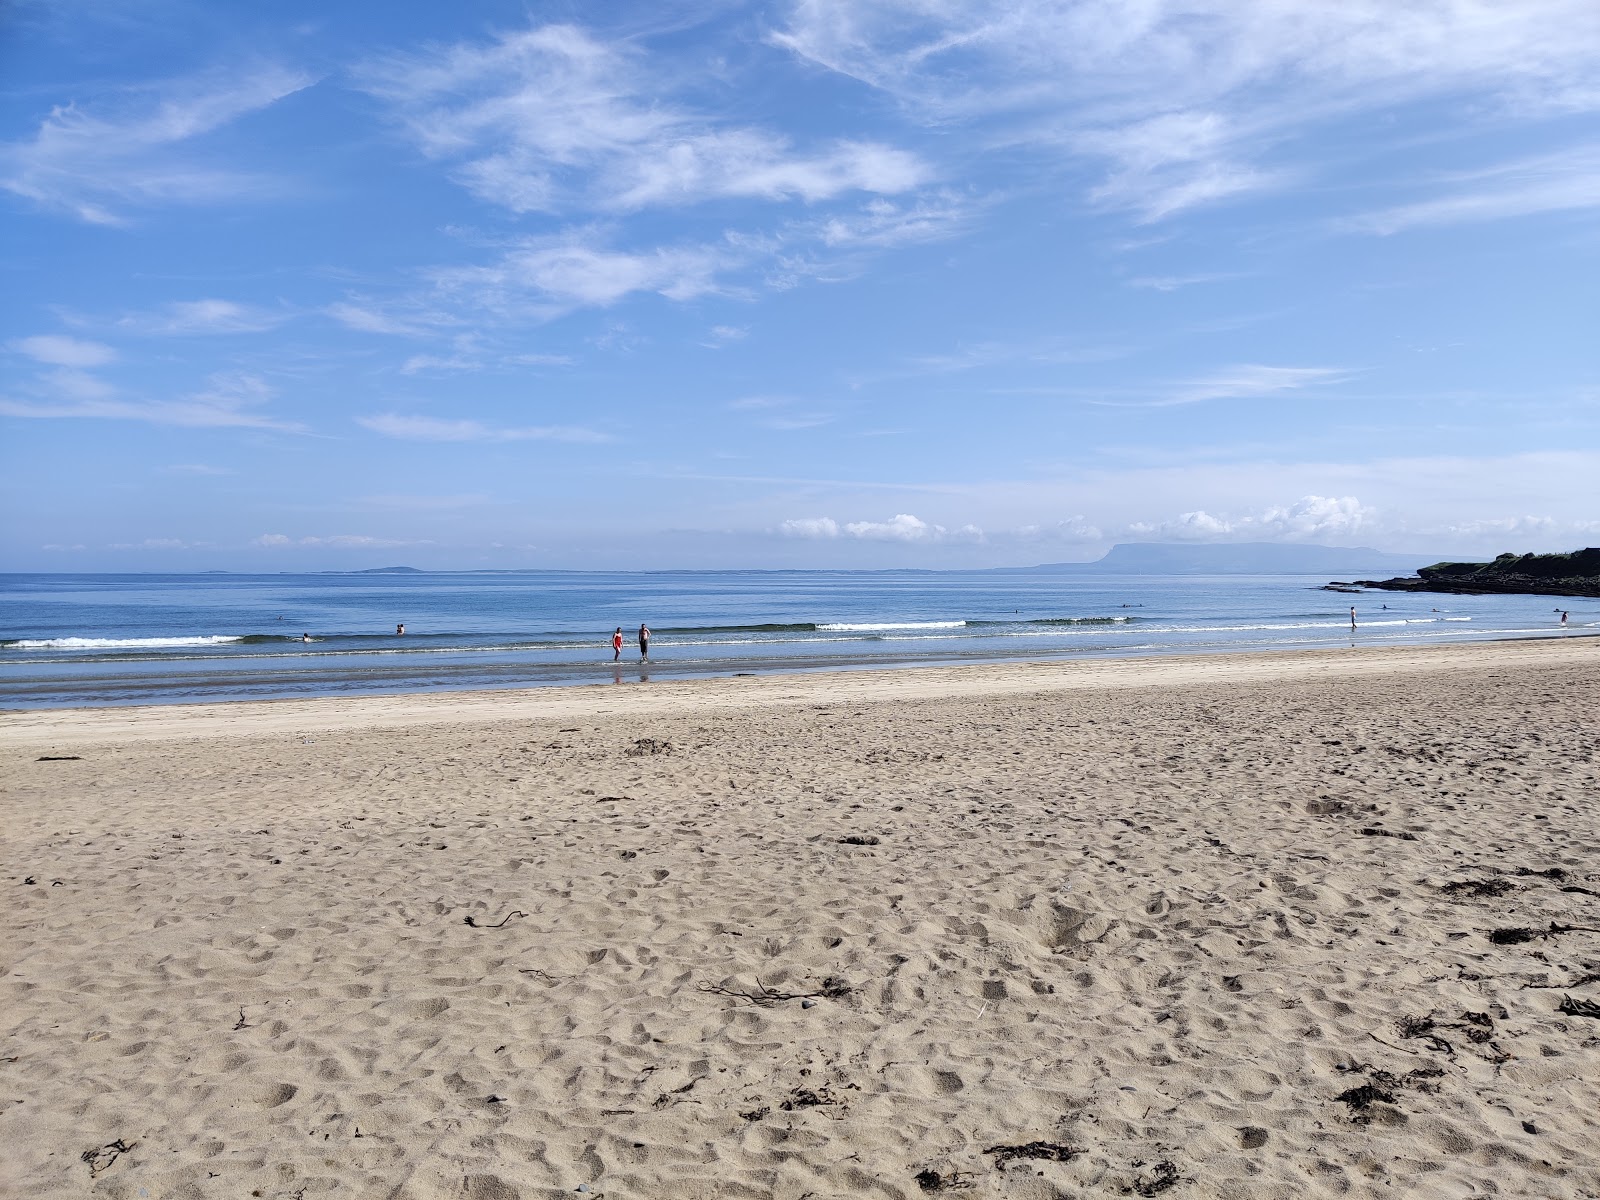 Dunmoran Beach'in fotoğrafı geniş plaj ile birlikte